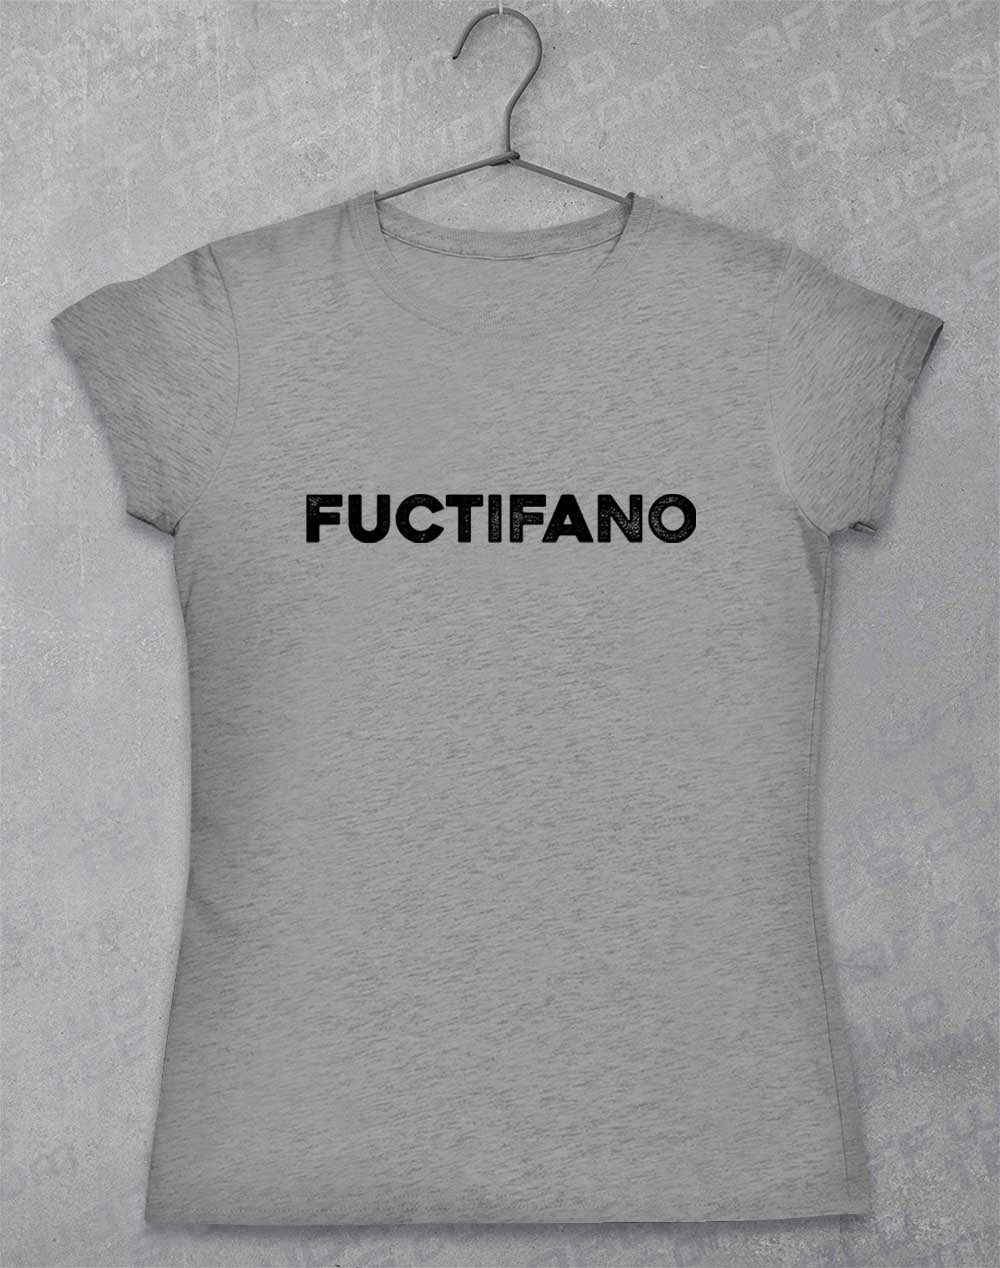 Sport Grey - Fuctifano Women's T-Shirt